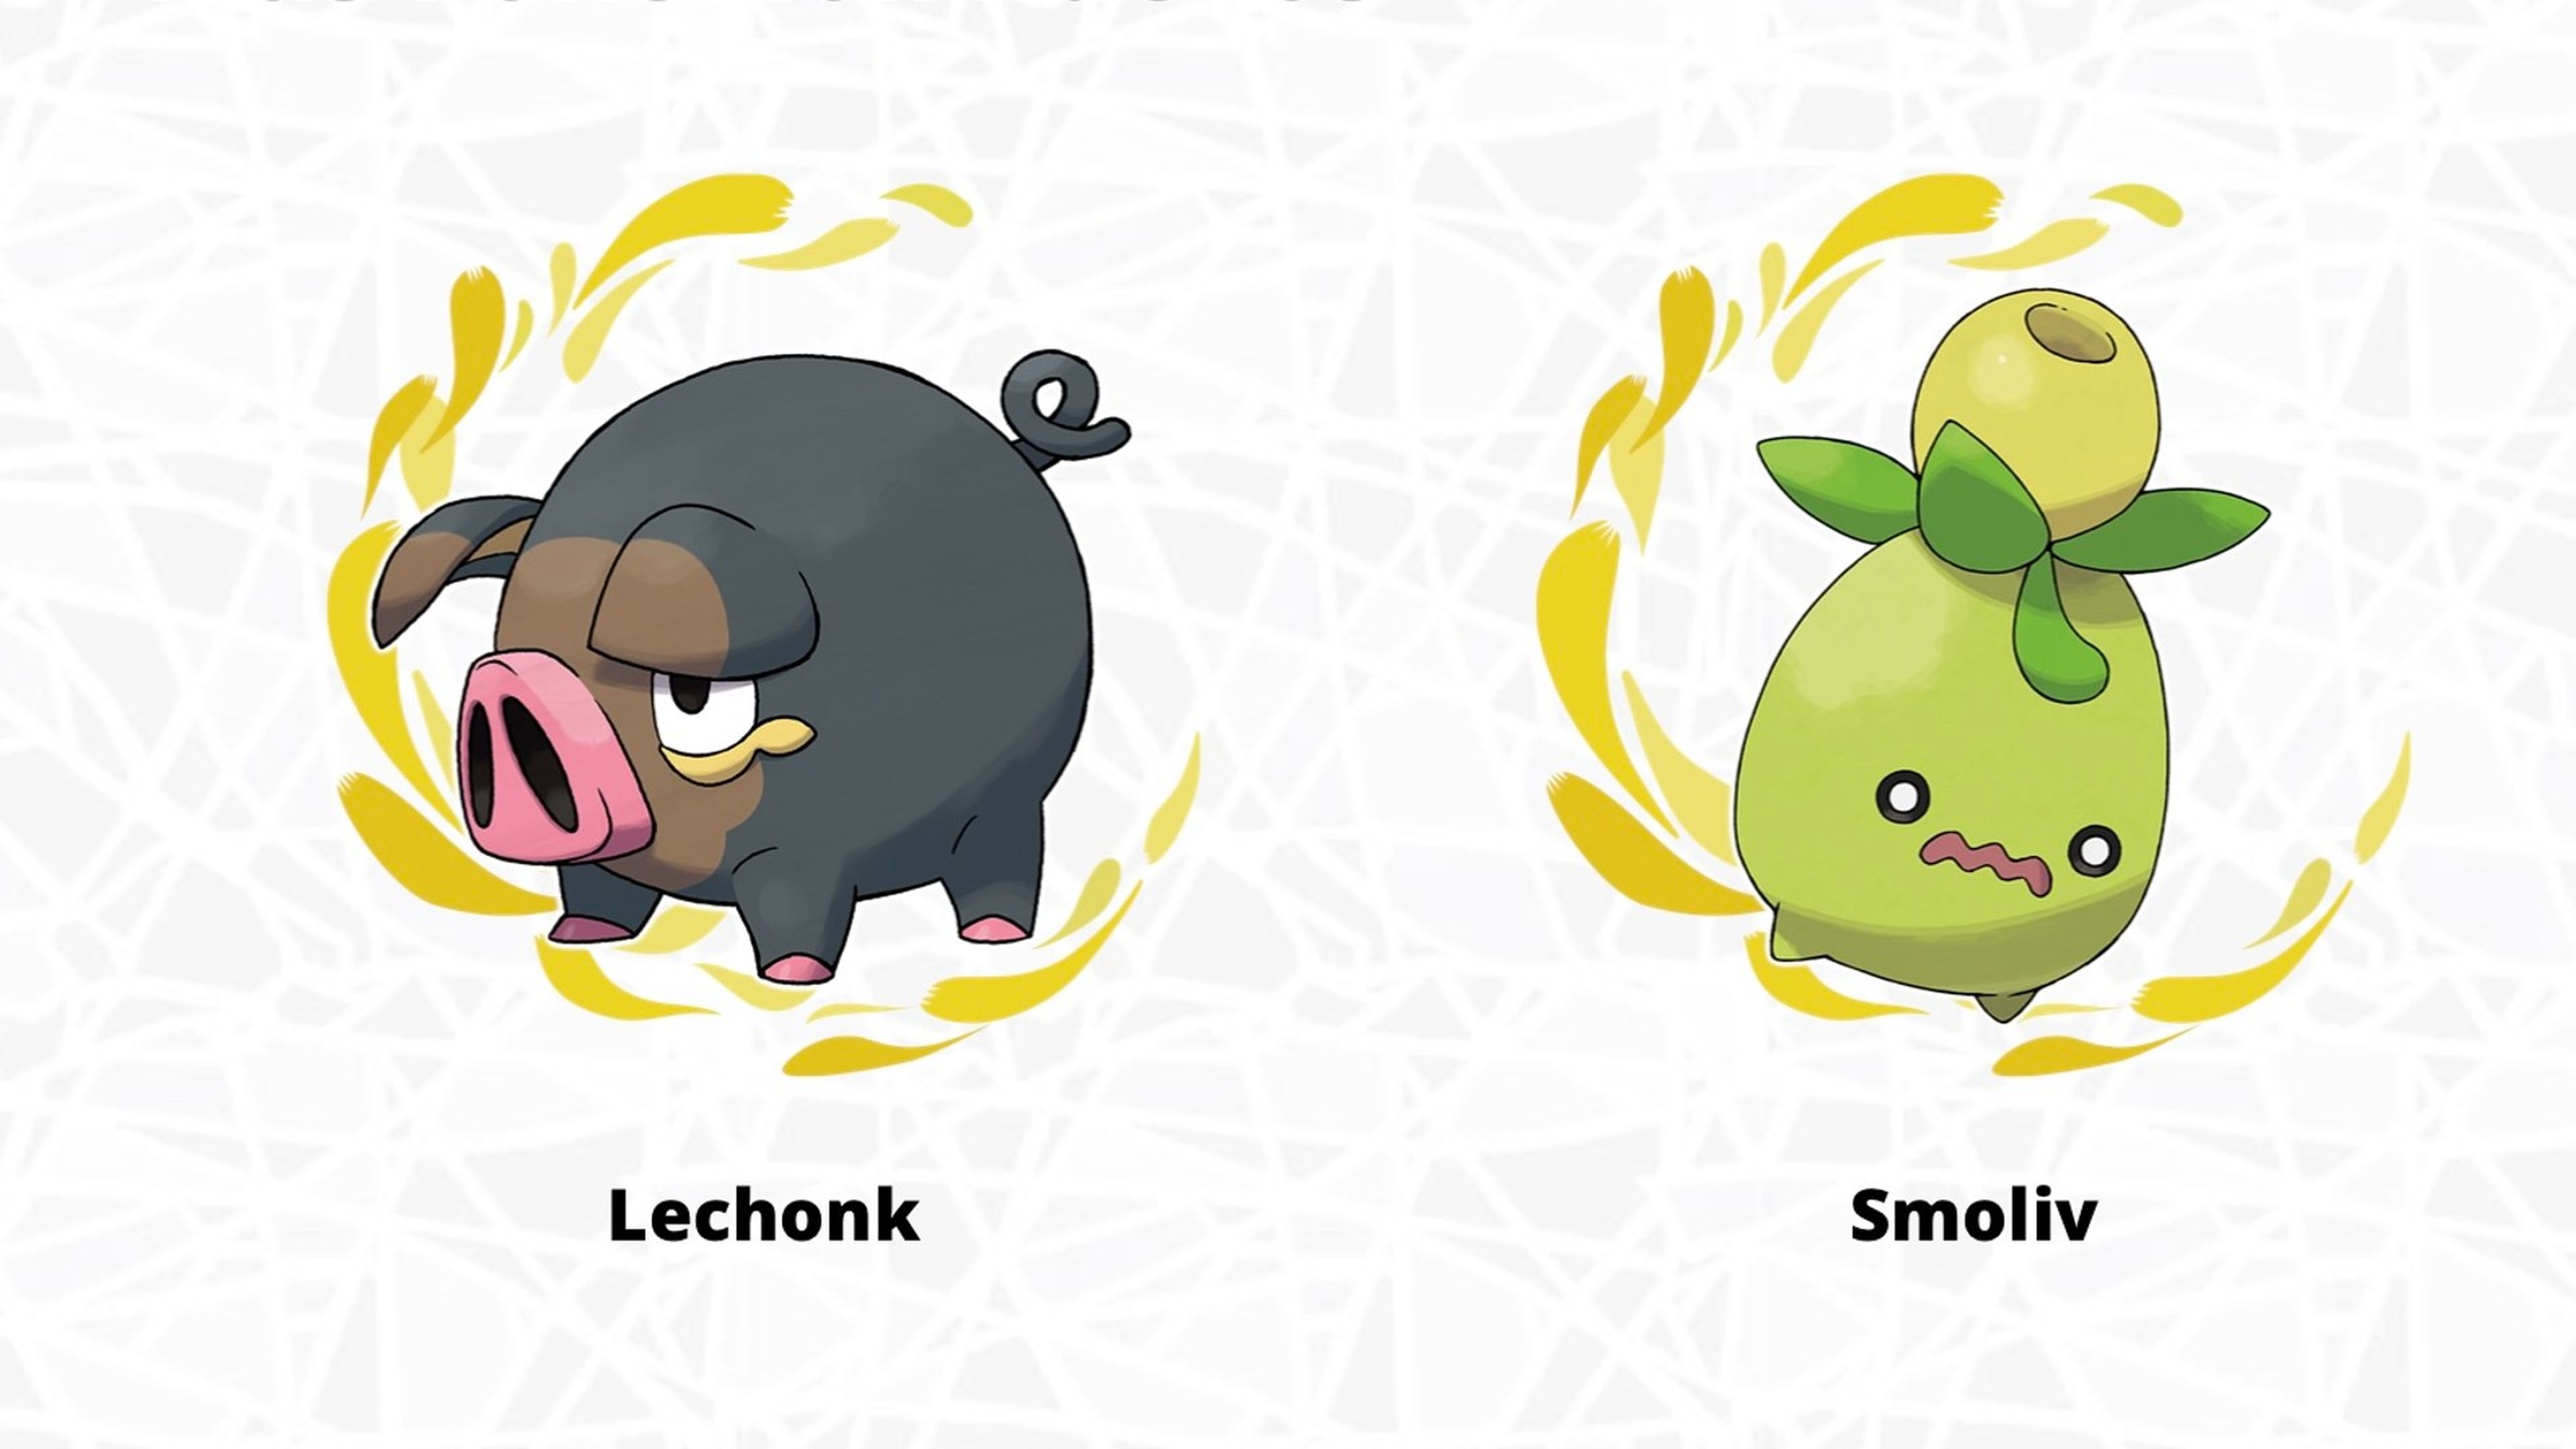 Los nuevos Pokémon de Escarlata y Púrpura son muy españoles